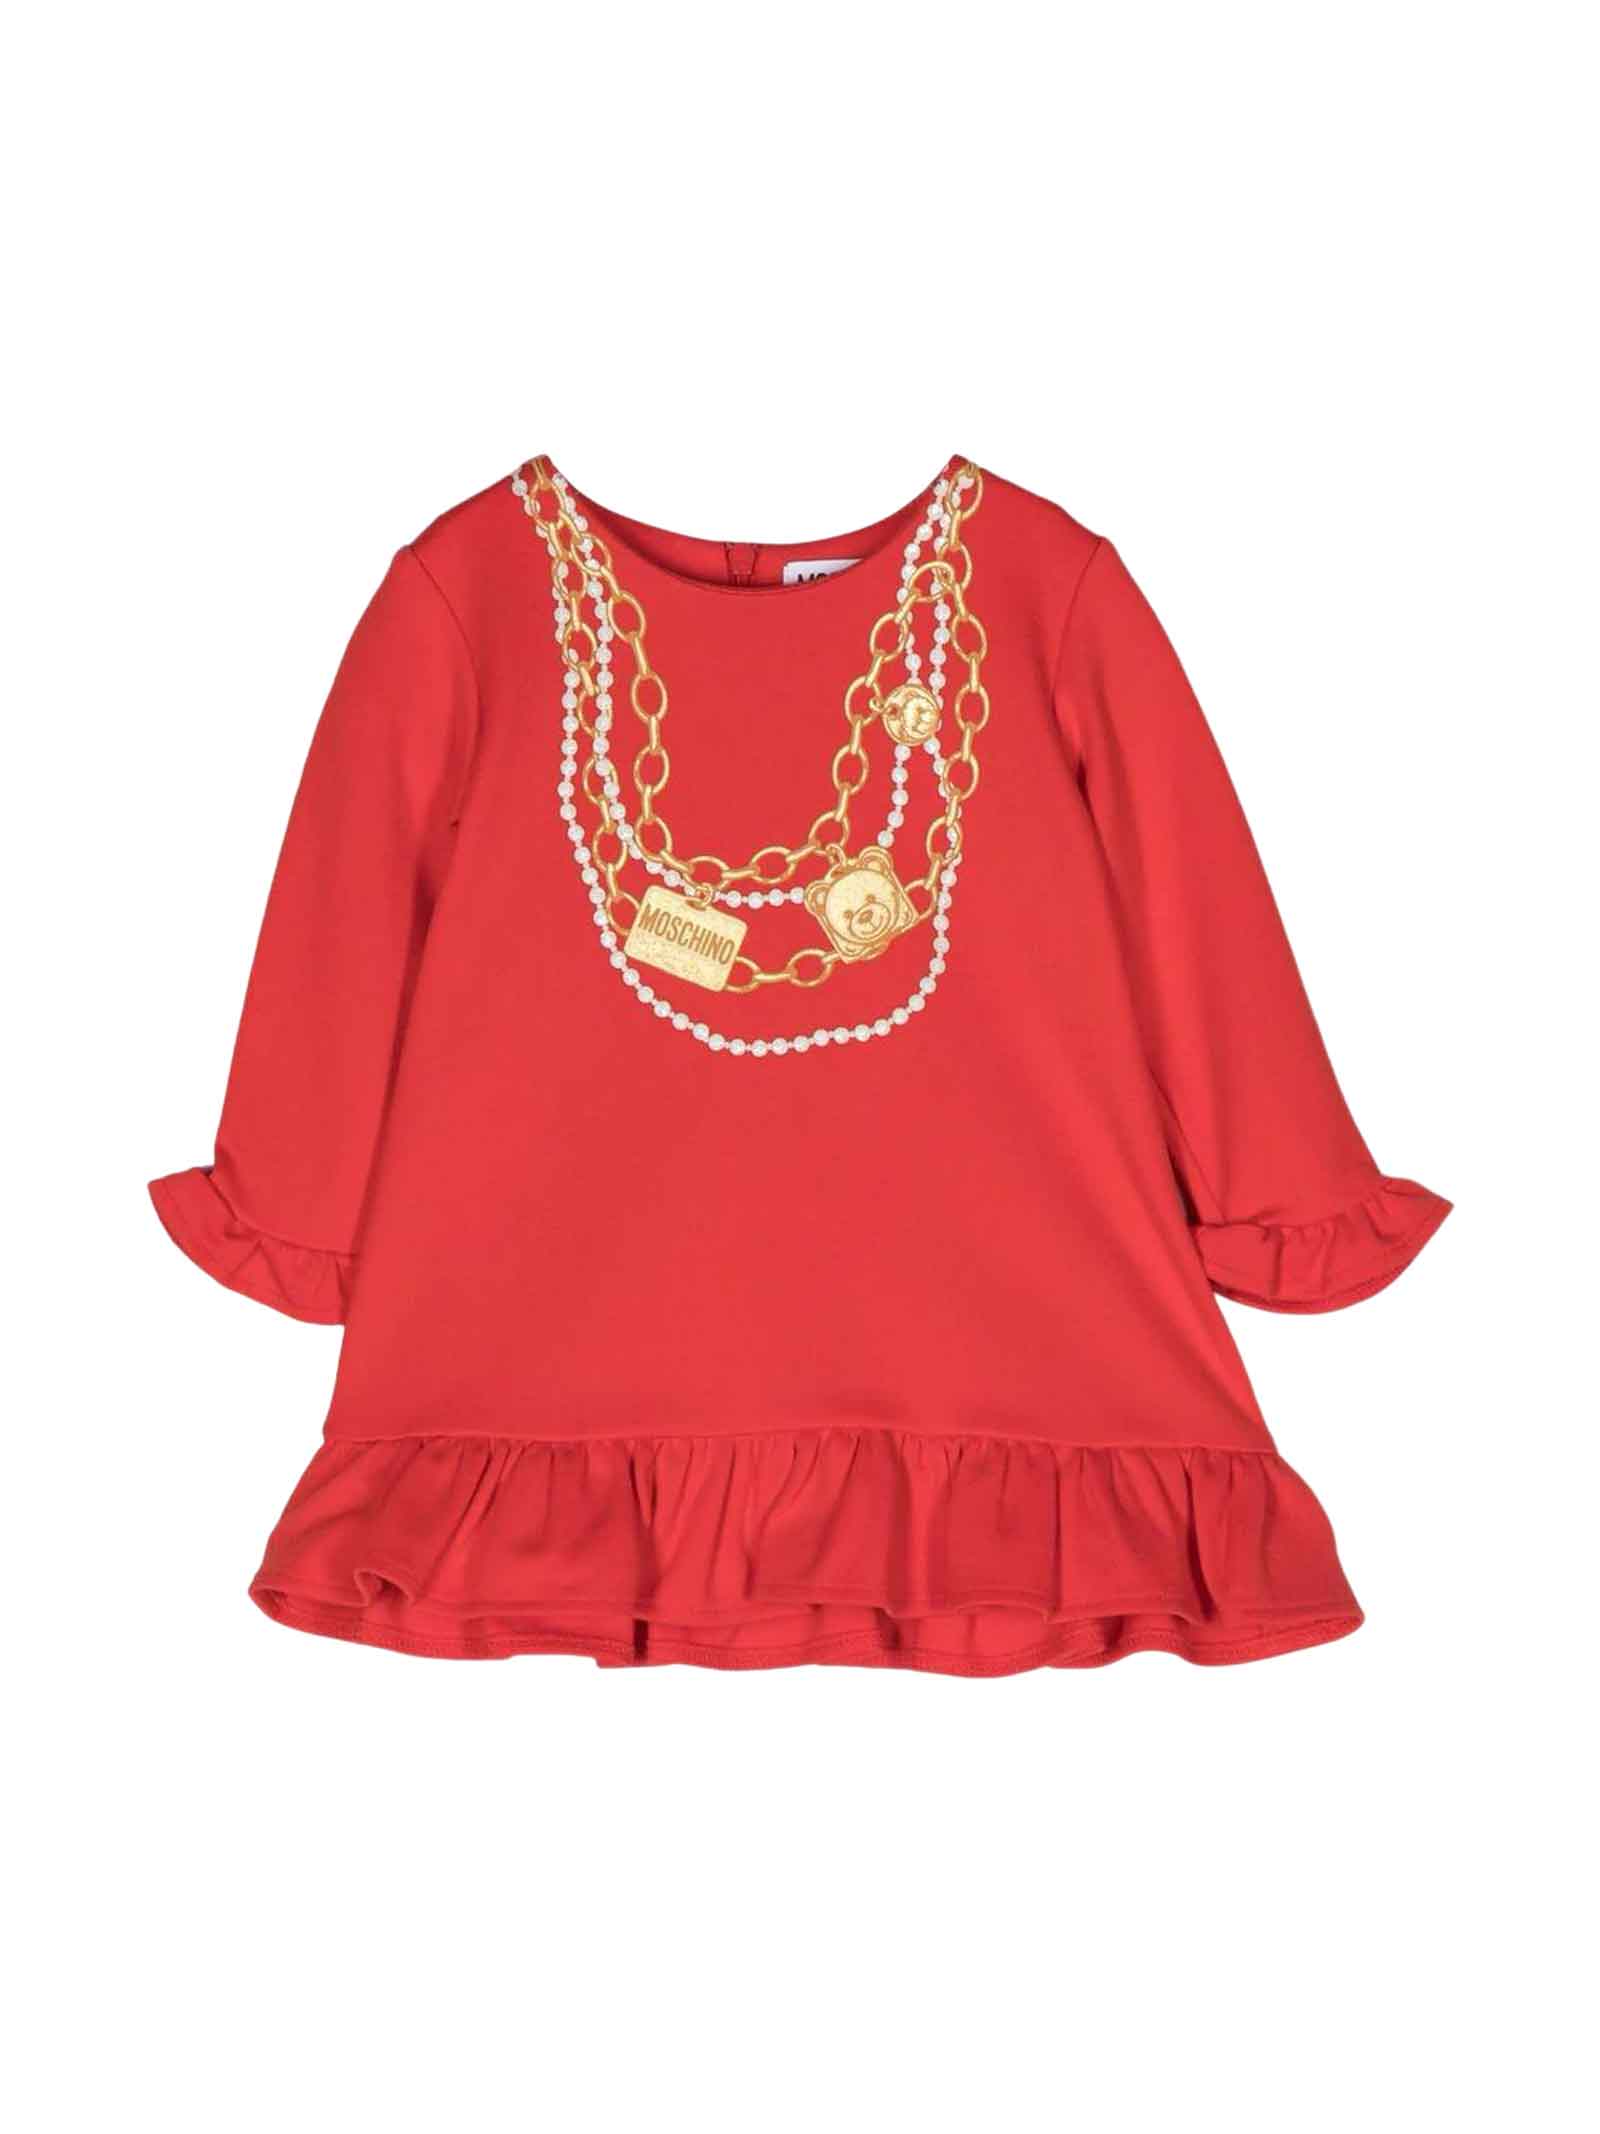 MOSCHINO RED DRESS BABY GIRL